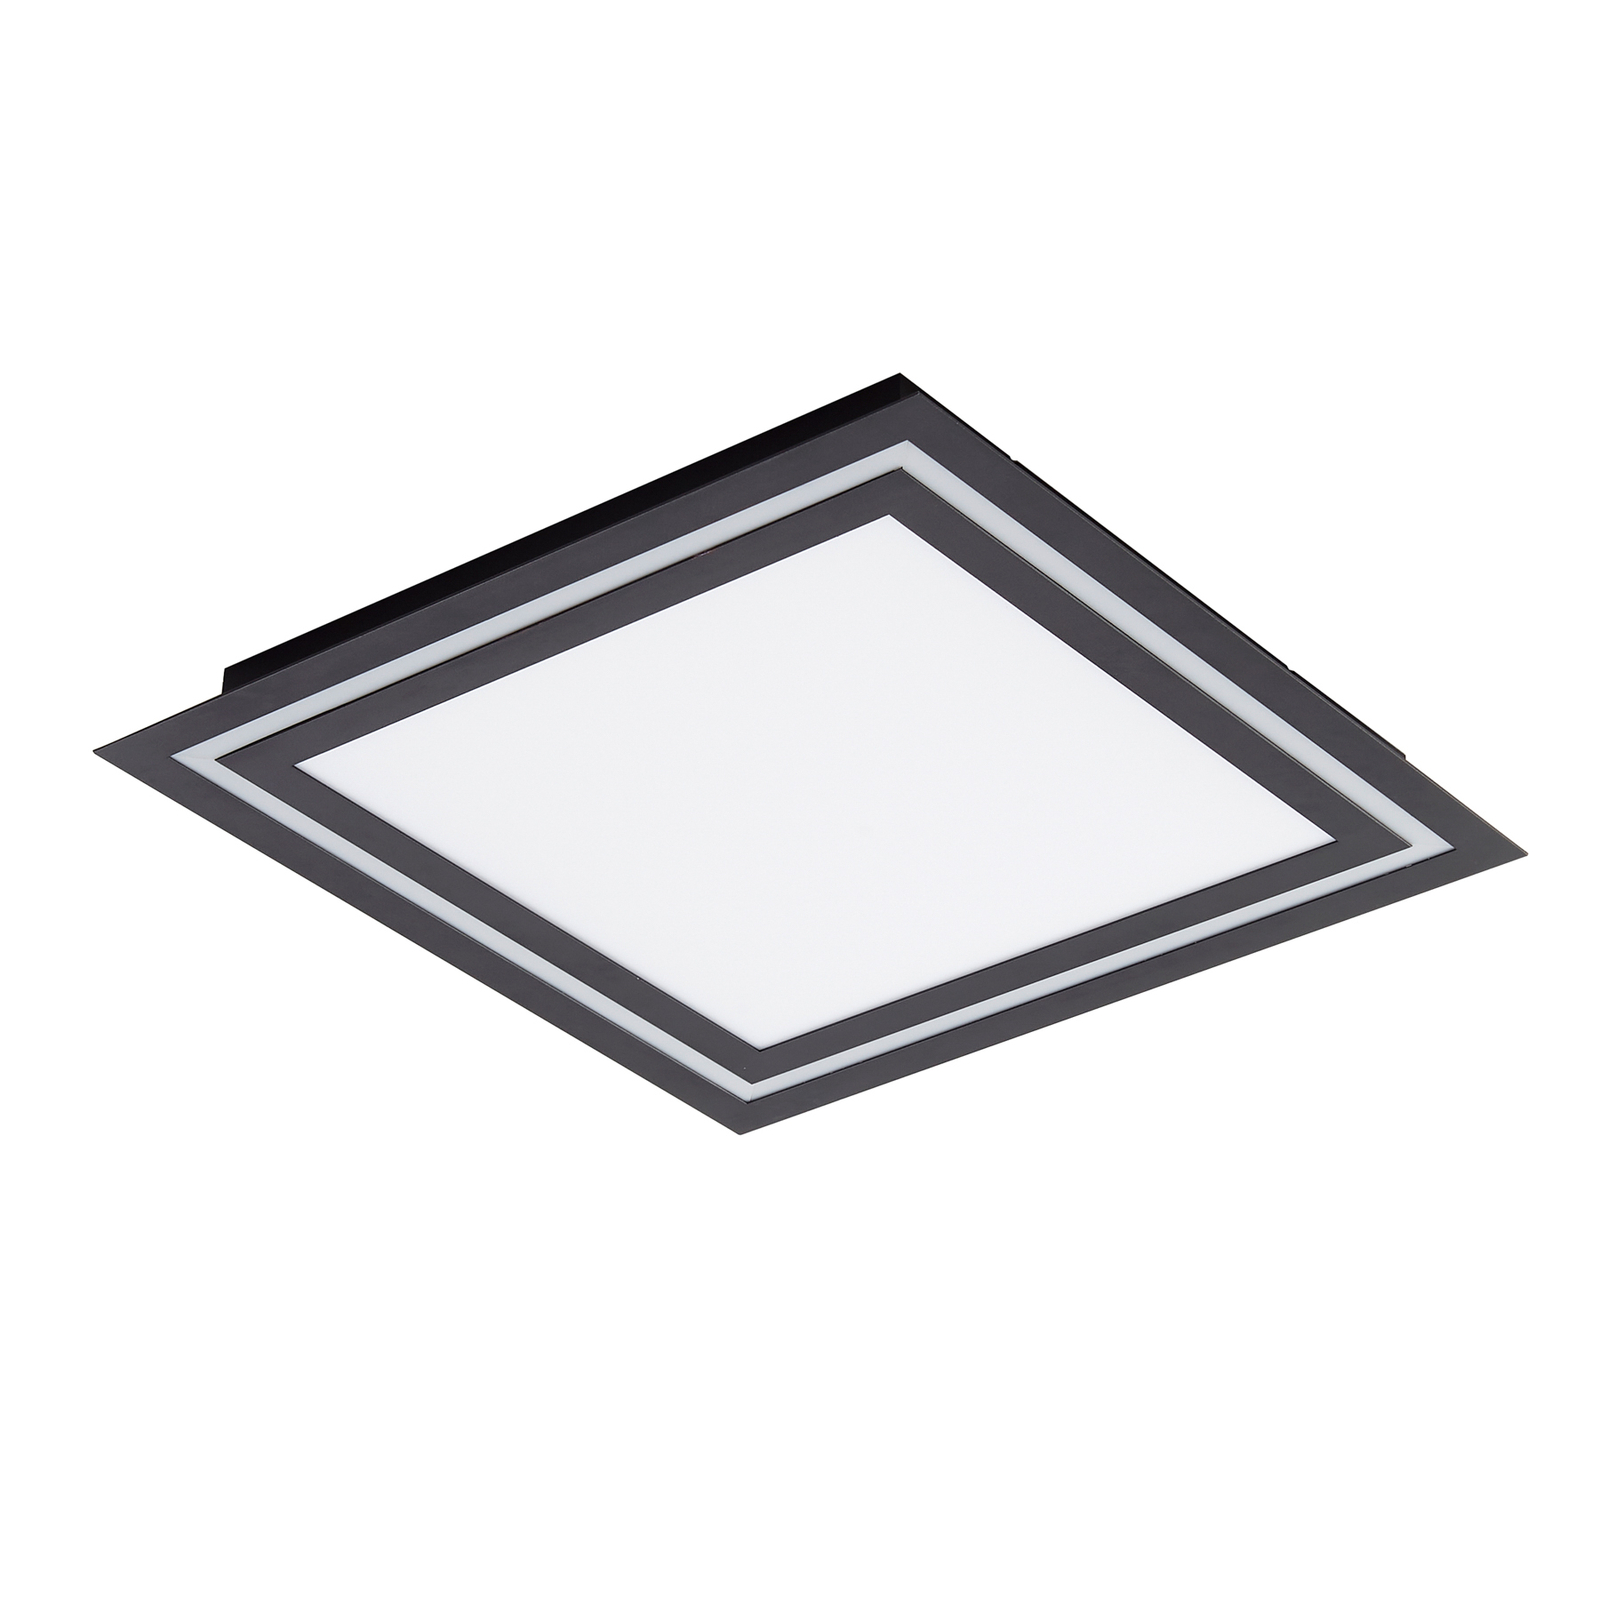 Stropné svietidlo Lucande LED Leicy, čierne, 44 cm, RGB, CCT